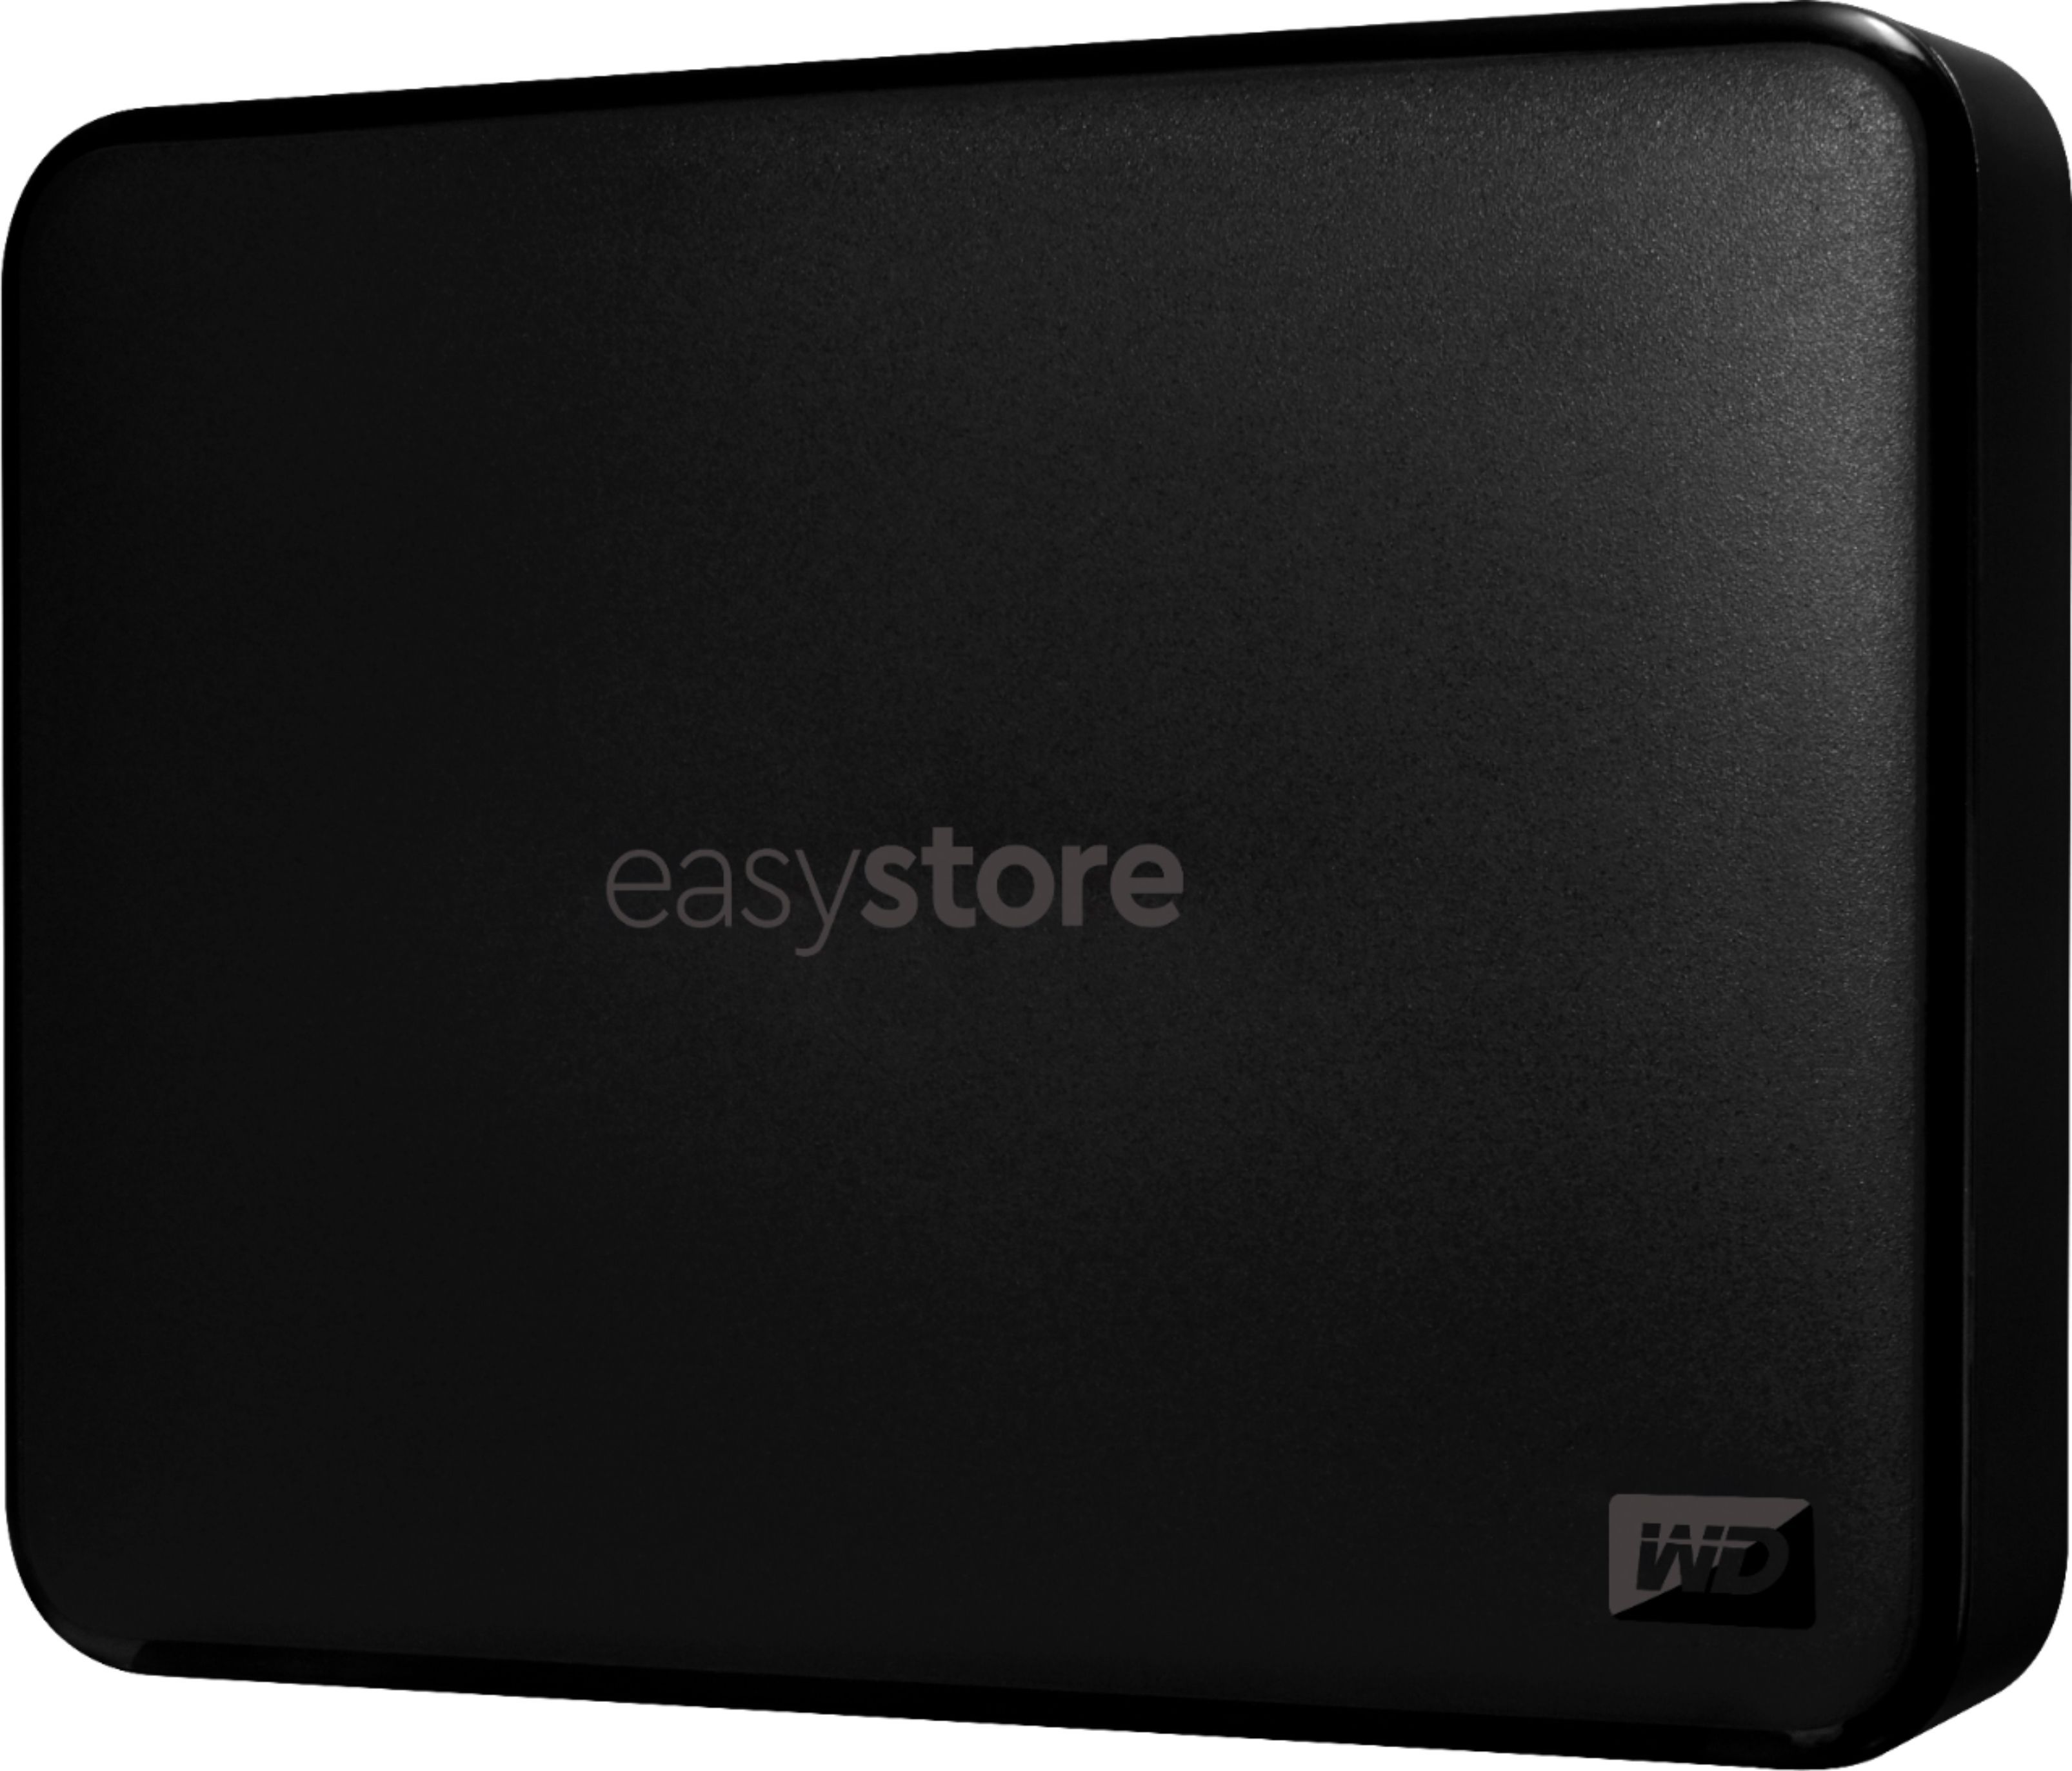 WD Easystore 4TB External USB 3.0 Portable Hard Drive Black WDBAJP0040BBK-WESN - Best Buy | Best Buy U.S.